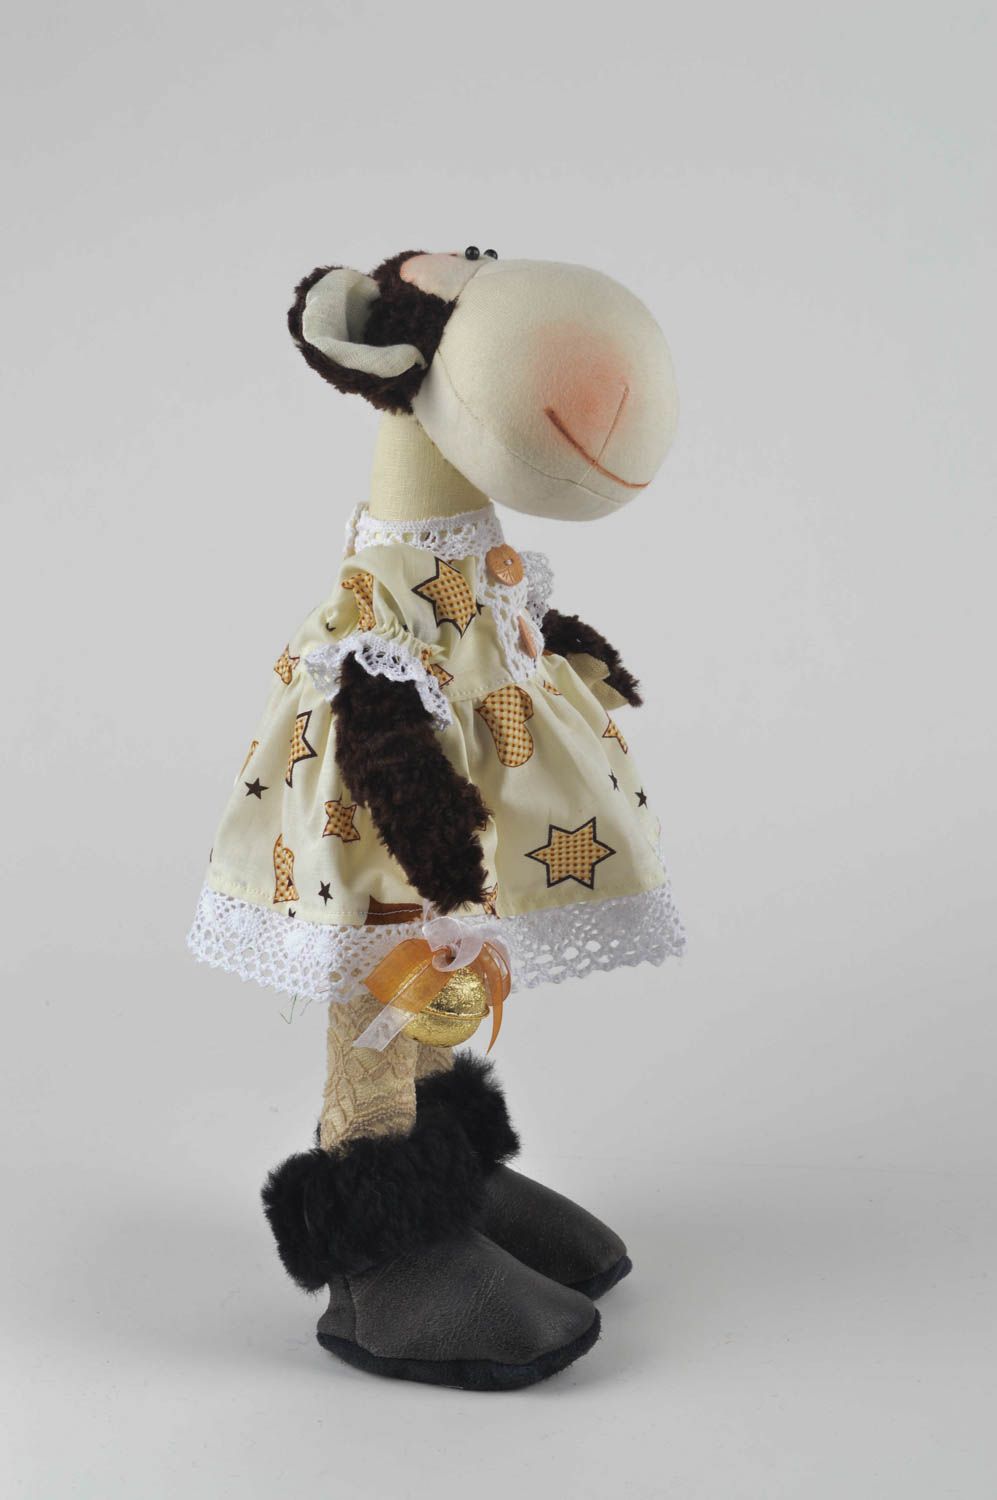 Kinder Spielzeug Stoff Tier handmade Affe Kuscheltier Geburtstag Geschenk schön foto 3